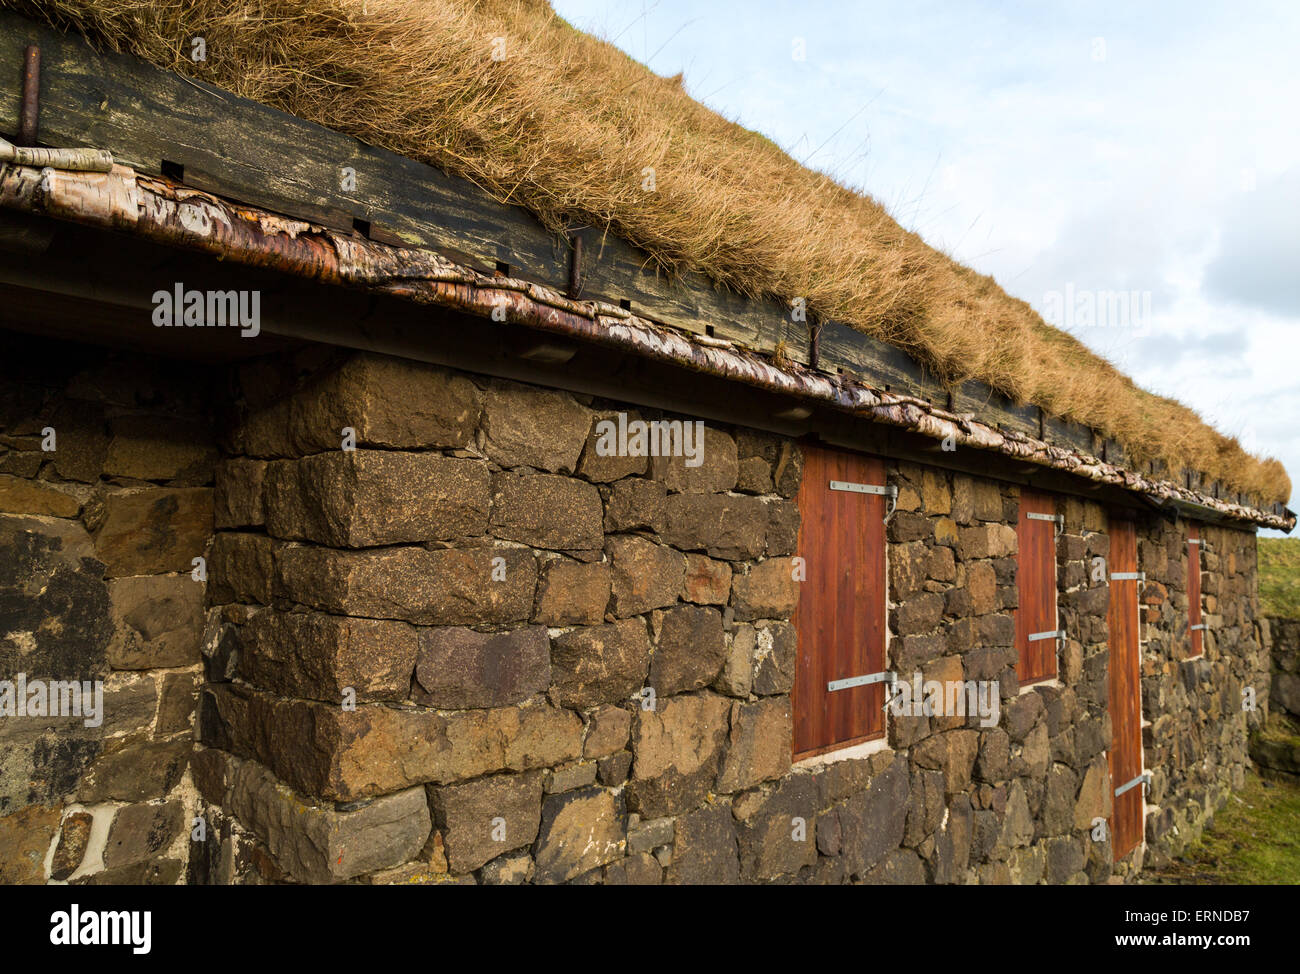 Typische ländliche Gebäude mit Naturrasen Dach und Silver Birch Sparren in Tórshavn, Färöer Inseln Stockfoto